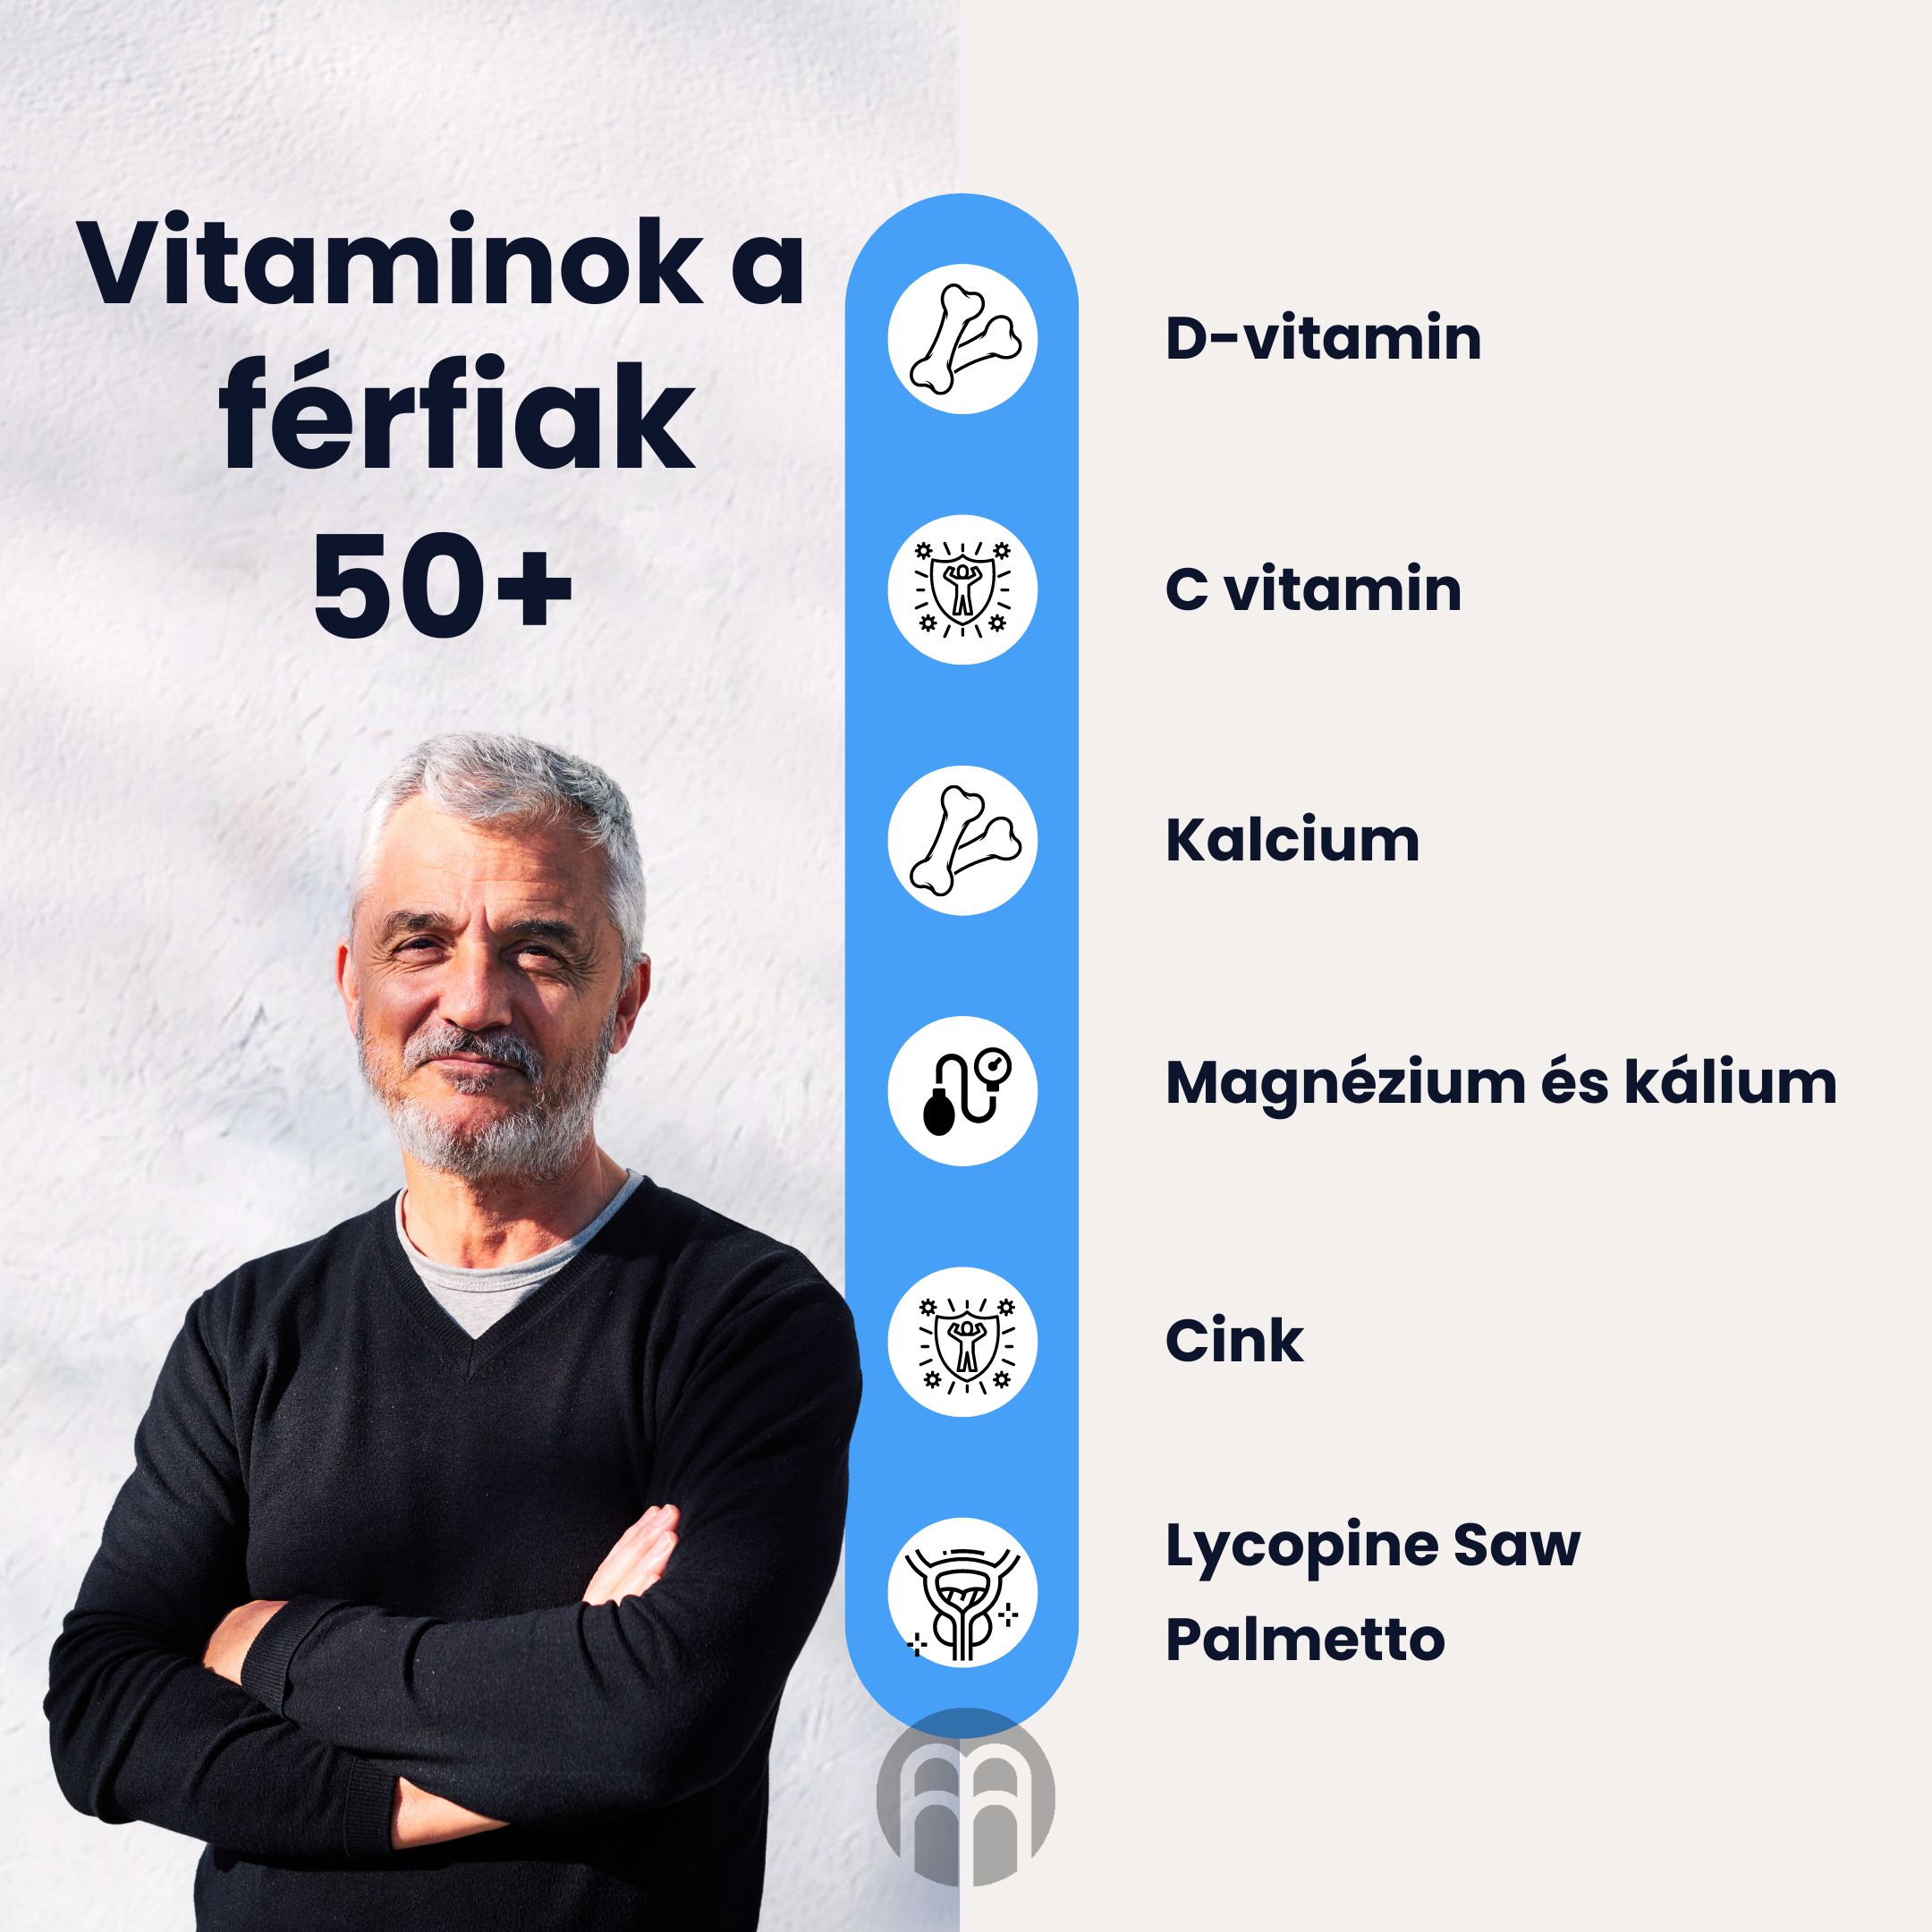 Kopie návrhu Vitamíny pro muže 50+